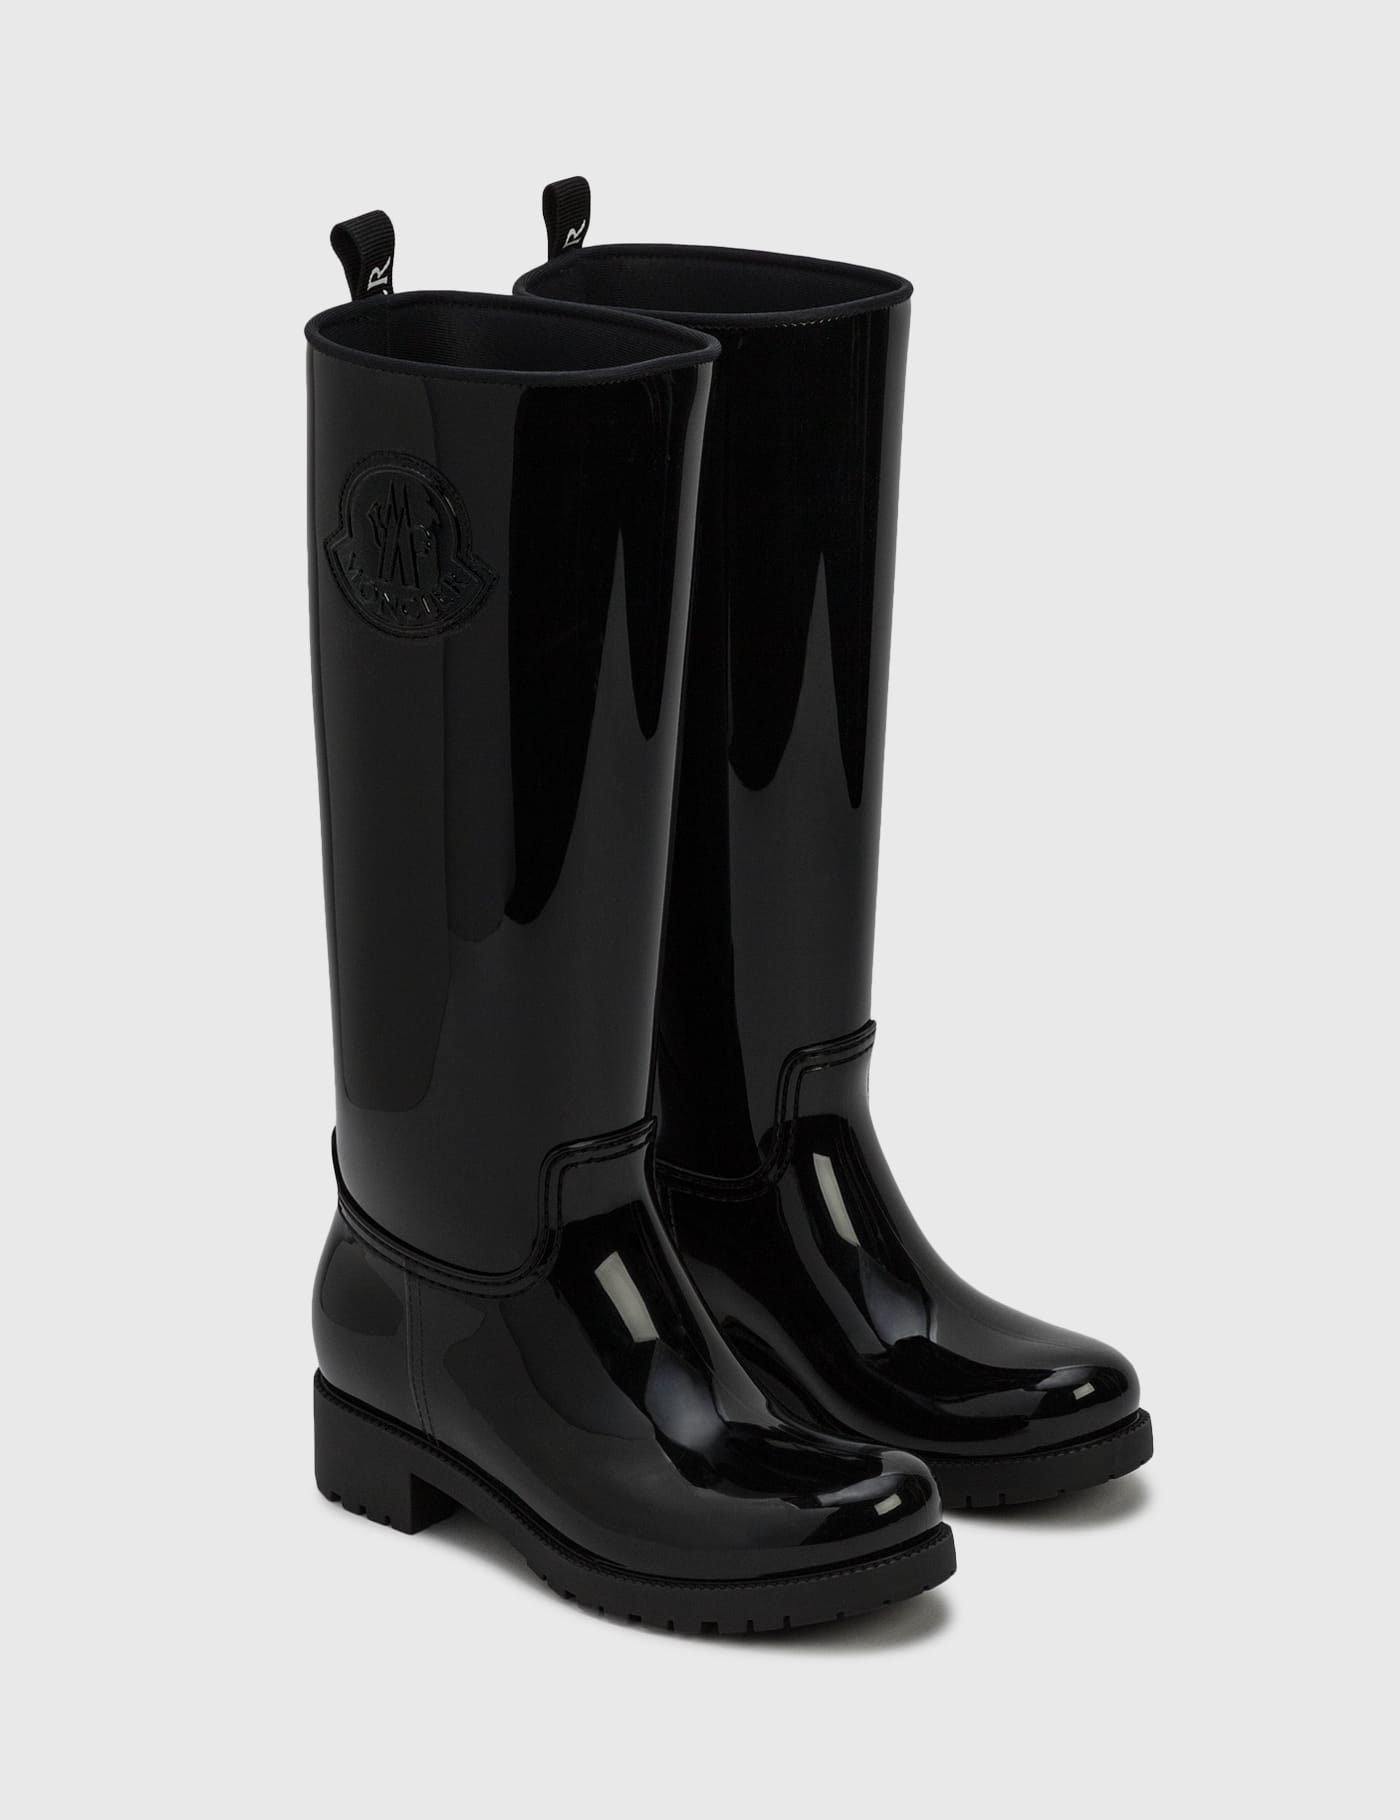 black shiny rain boots